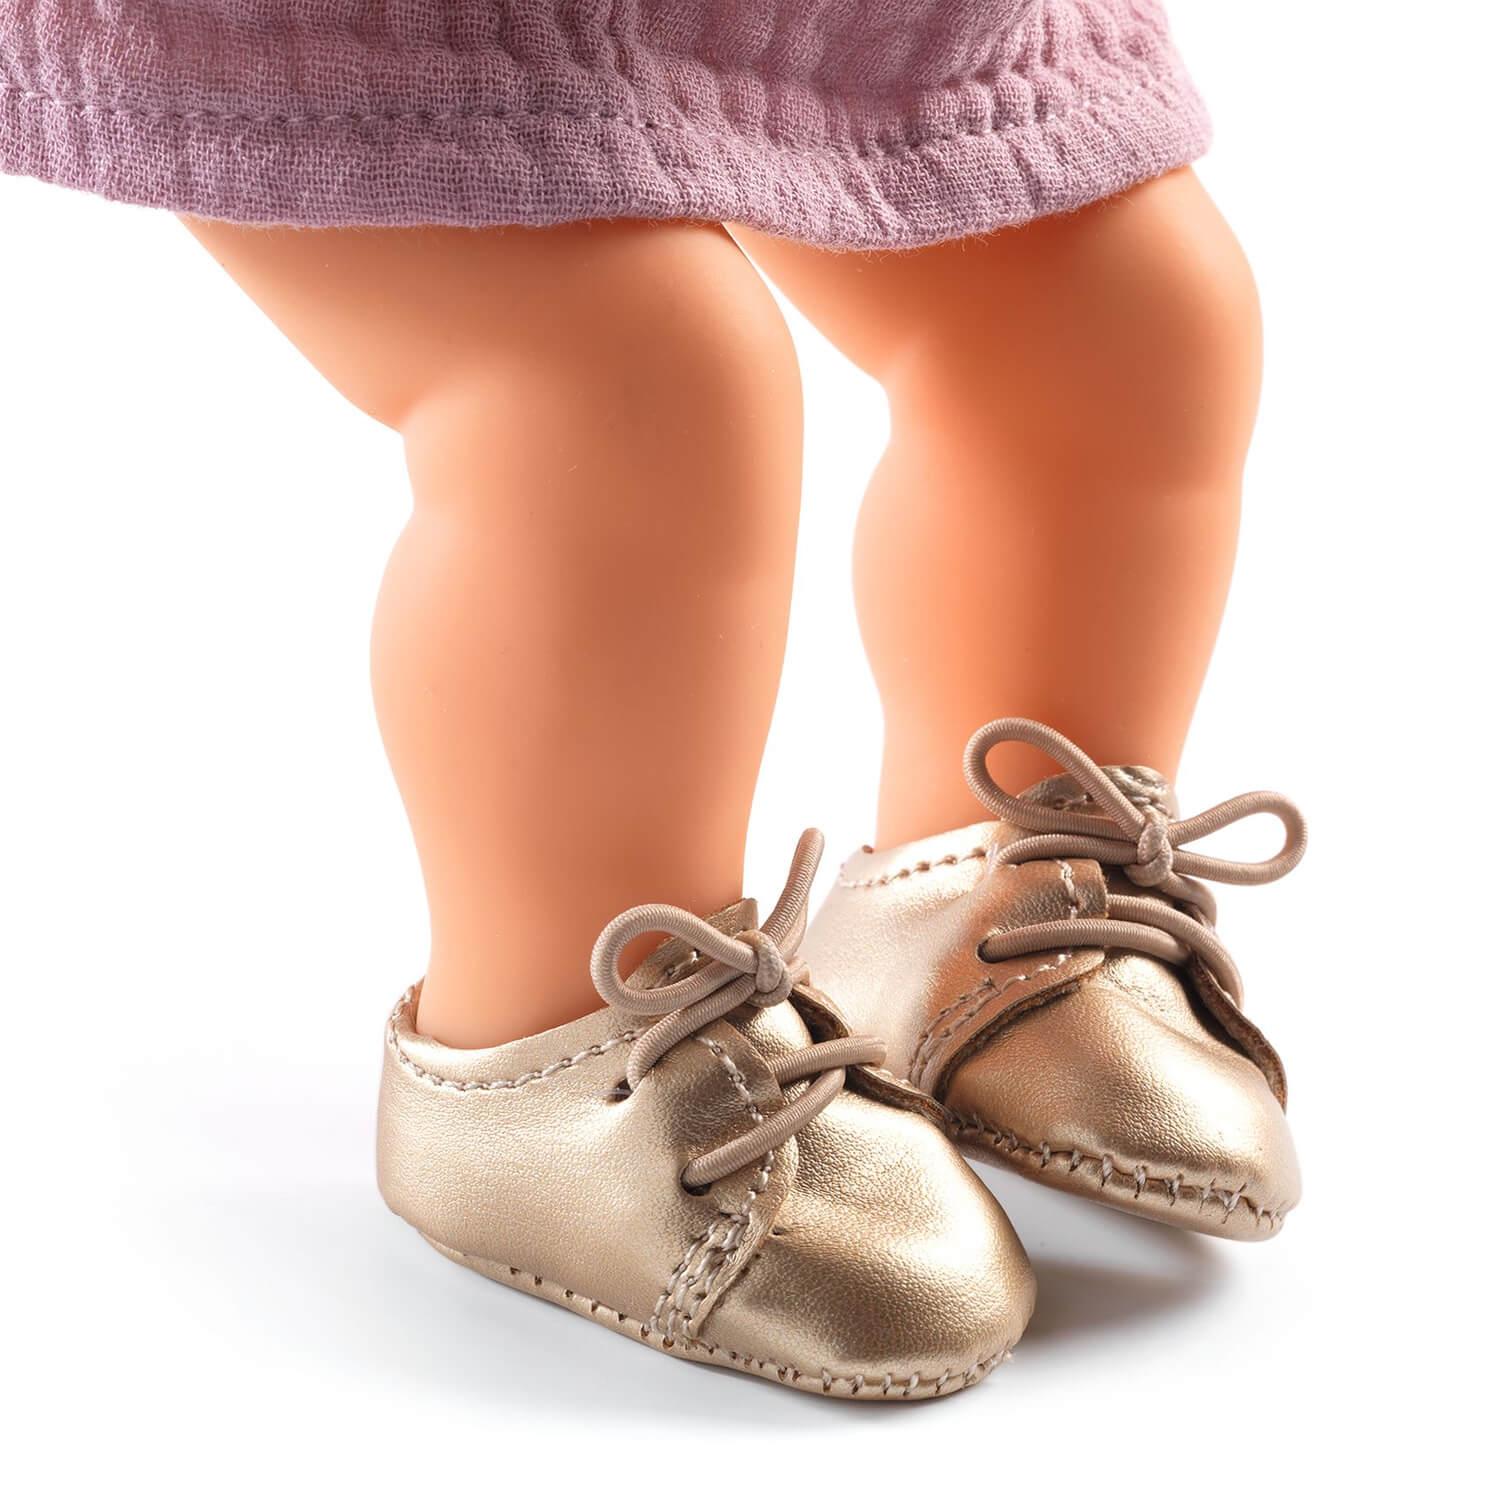 Vêtement pour poupée Poméa : Chaussures dorées